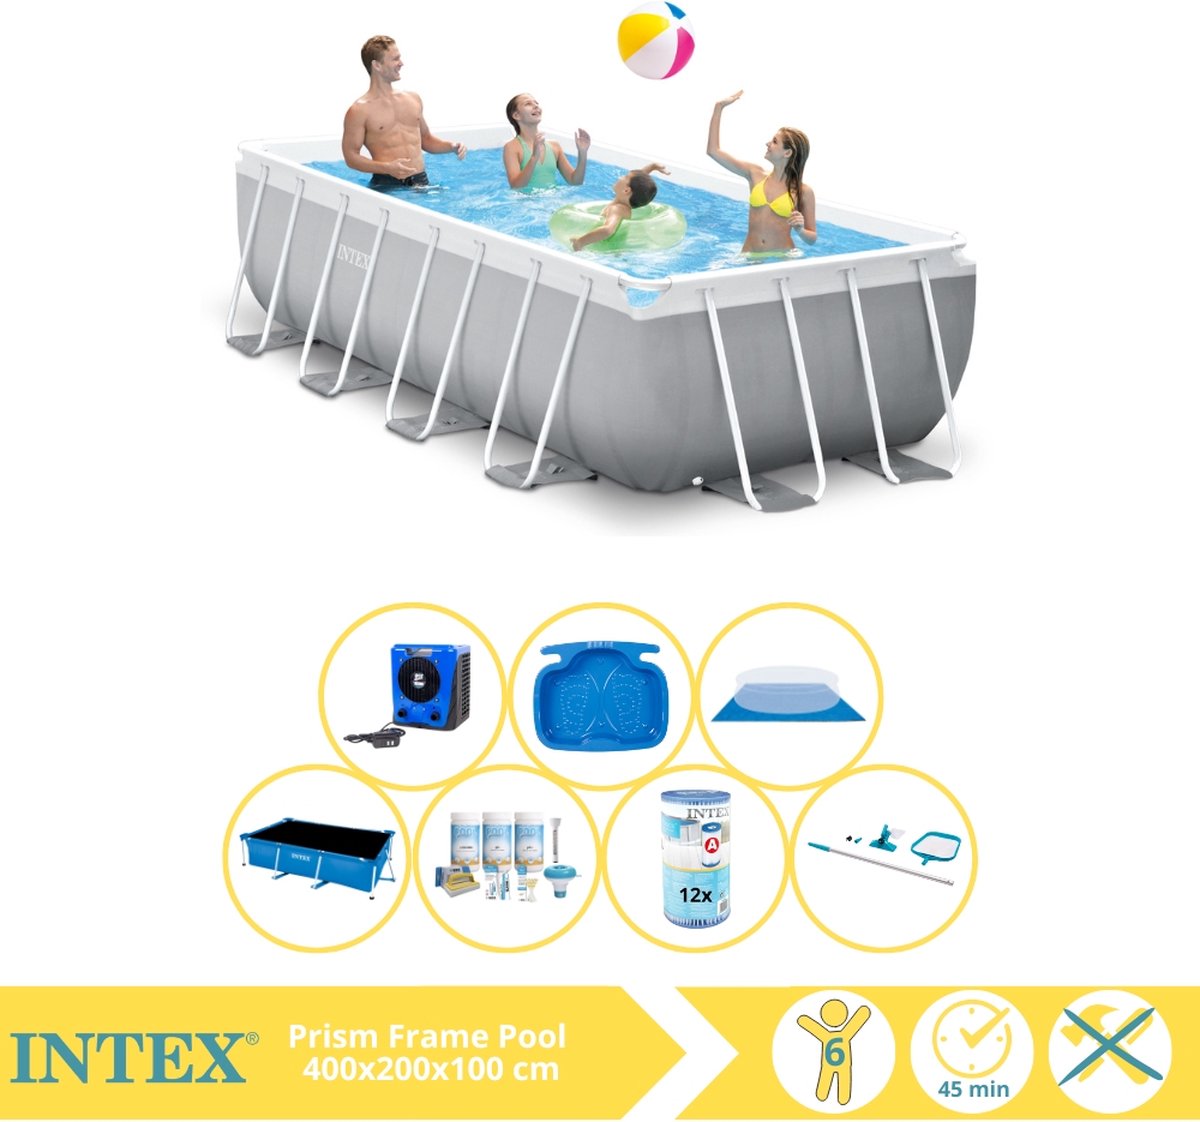 Intex Prism Frame Zwembad - Opzetzwembad - 400x200x100 cm - Inclusief Solarzeil Pro, Onderhoudspakket, Filter, Grondzeil, Onderhoudsset, Voetenbad en Warmtepomp HS